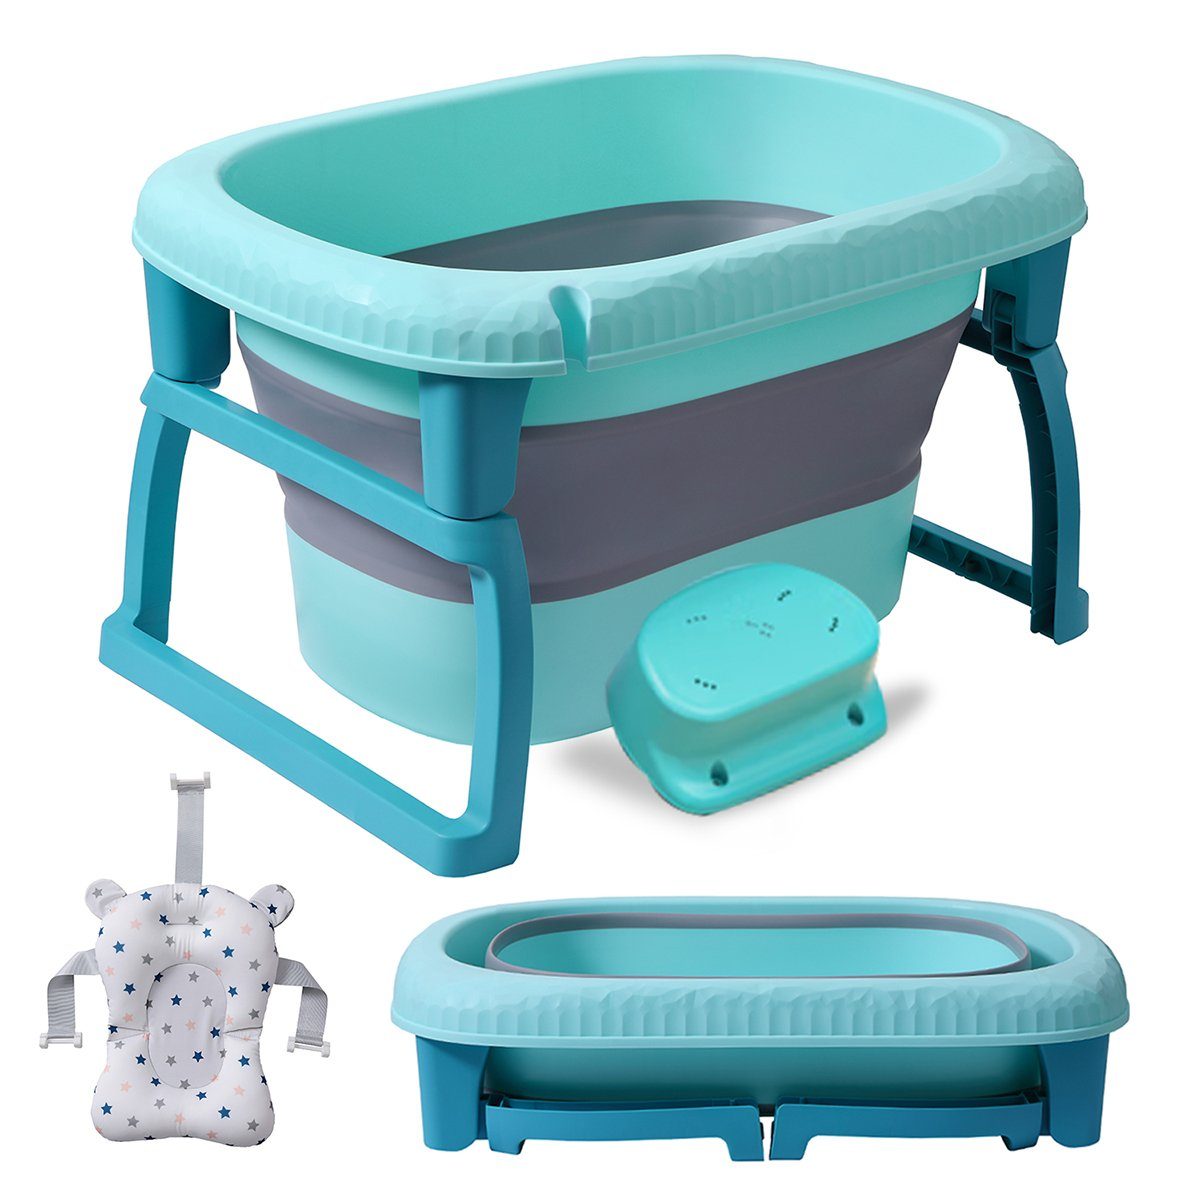 Seven Comfort Babybadewanne Faltbare Badewanne für Kinder, (Tragbare Badewanne für Dusche, Kinder Summer Schwimmbad), Faltbar 3-in-1 Wanne mit Badewannensitz und Duschrille für 0-6 Jahre grün